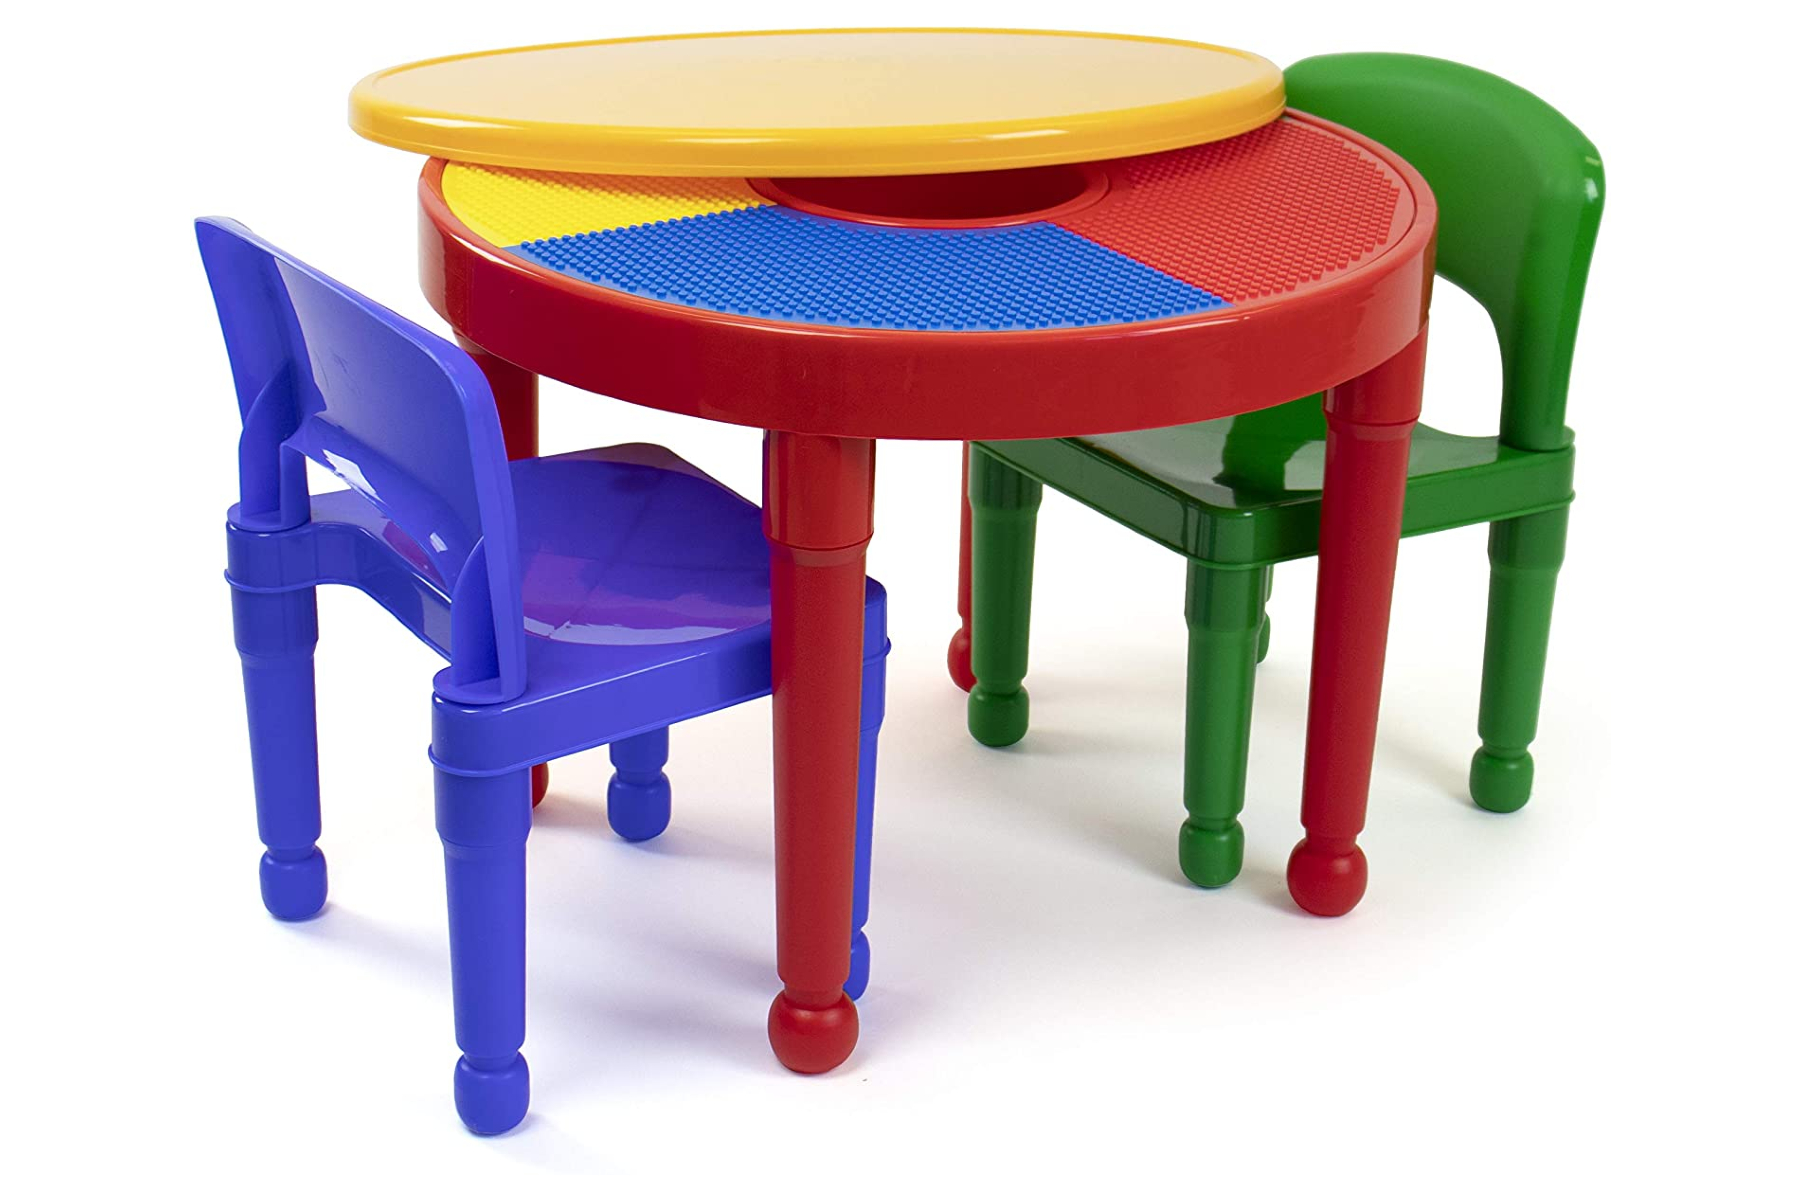 стол круглый детский со стульями